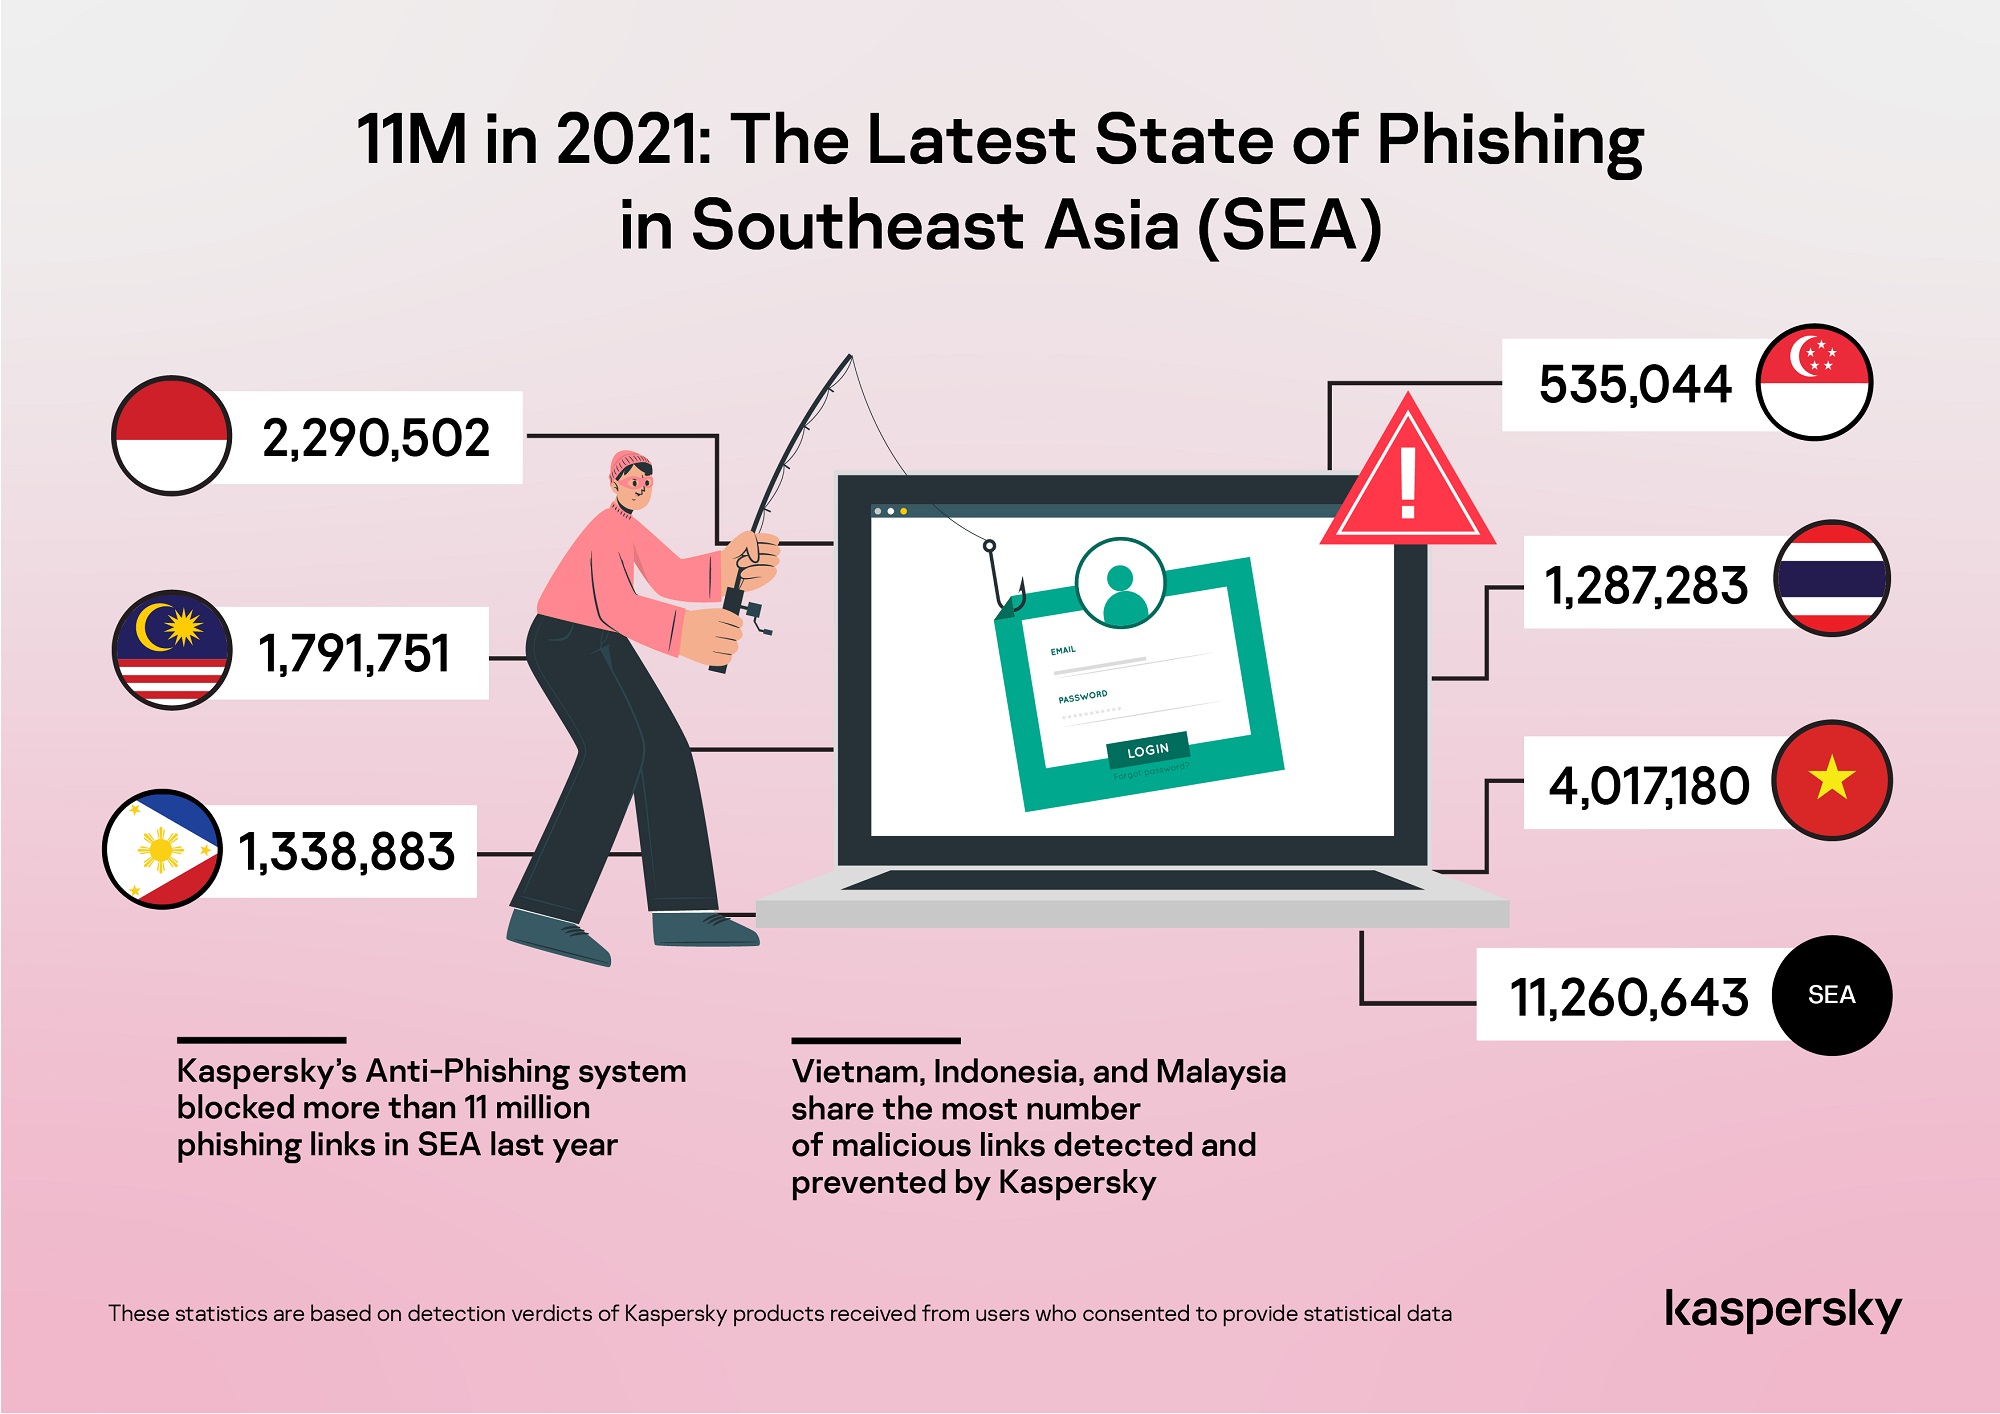 Lừa đảo và Doanh nghiệp: năm 2021, Kaspersky ngăn chặn 11 triệu email độc hại tại Đông Nam Á